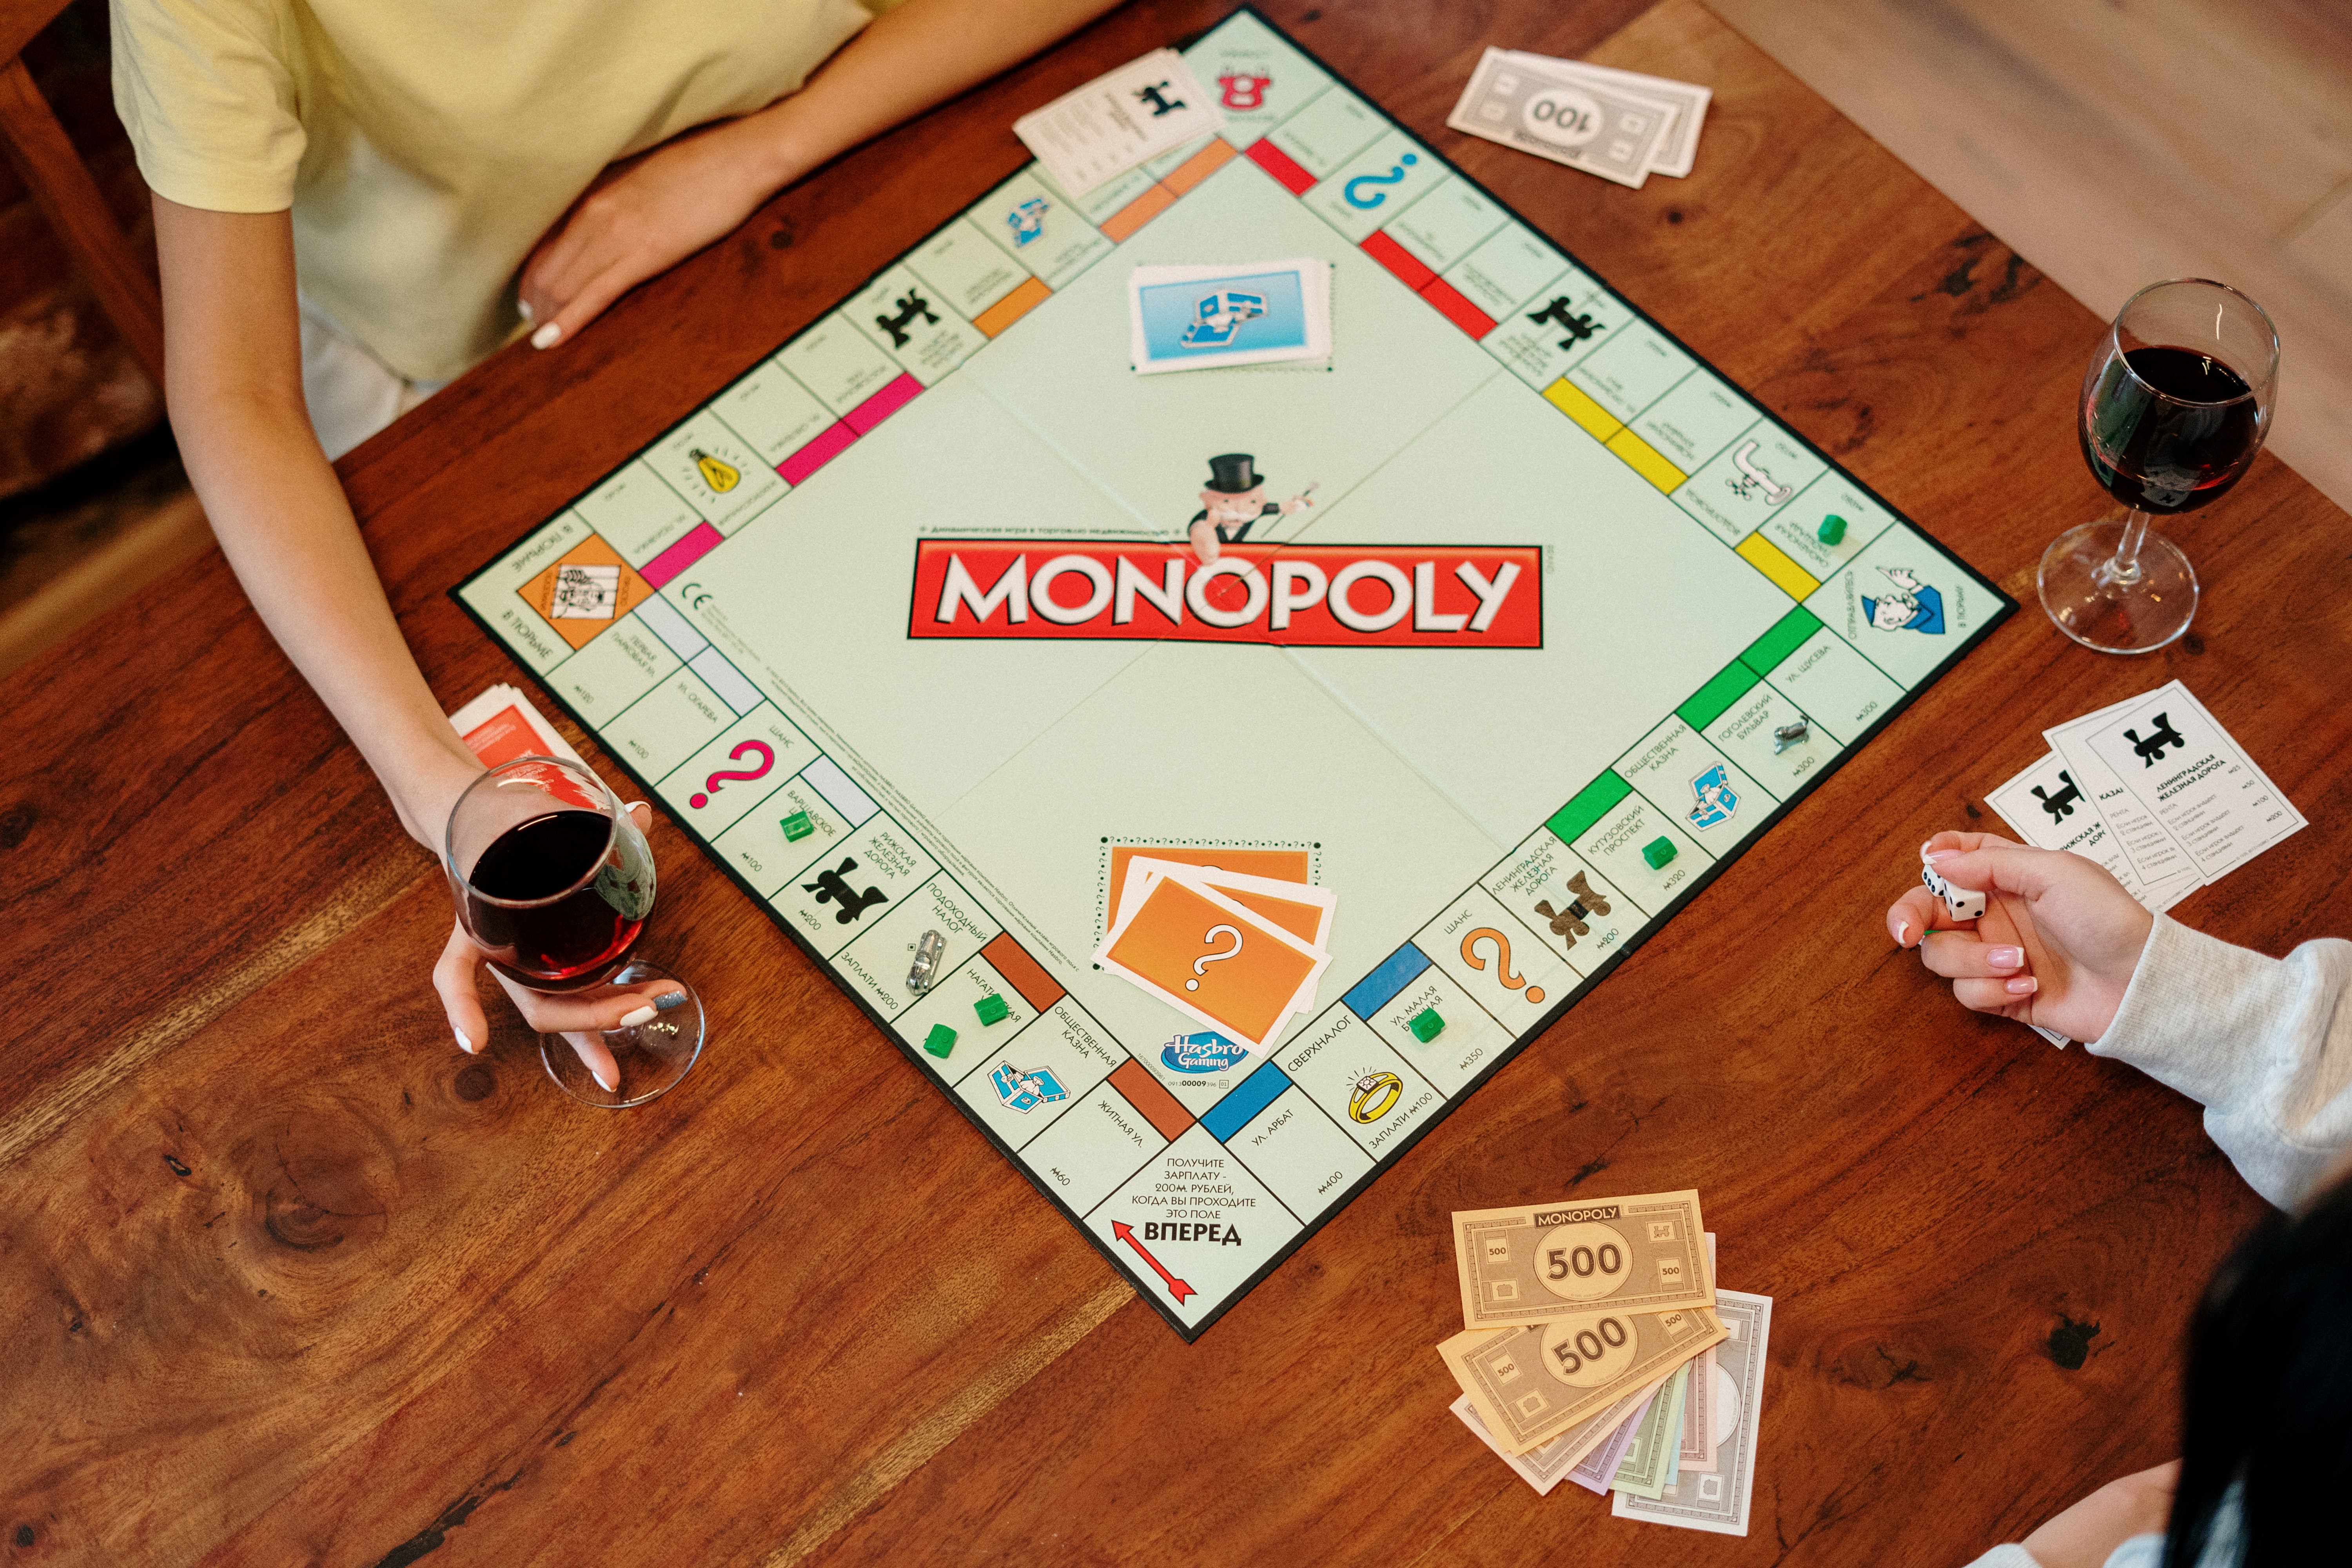 Monopoly foi criado por americano que teve ideia recusada - 02/06/2023 - O  Curioso - Folha